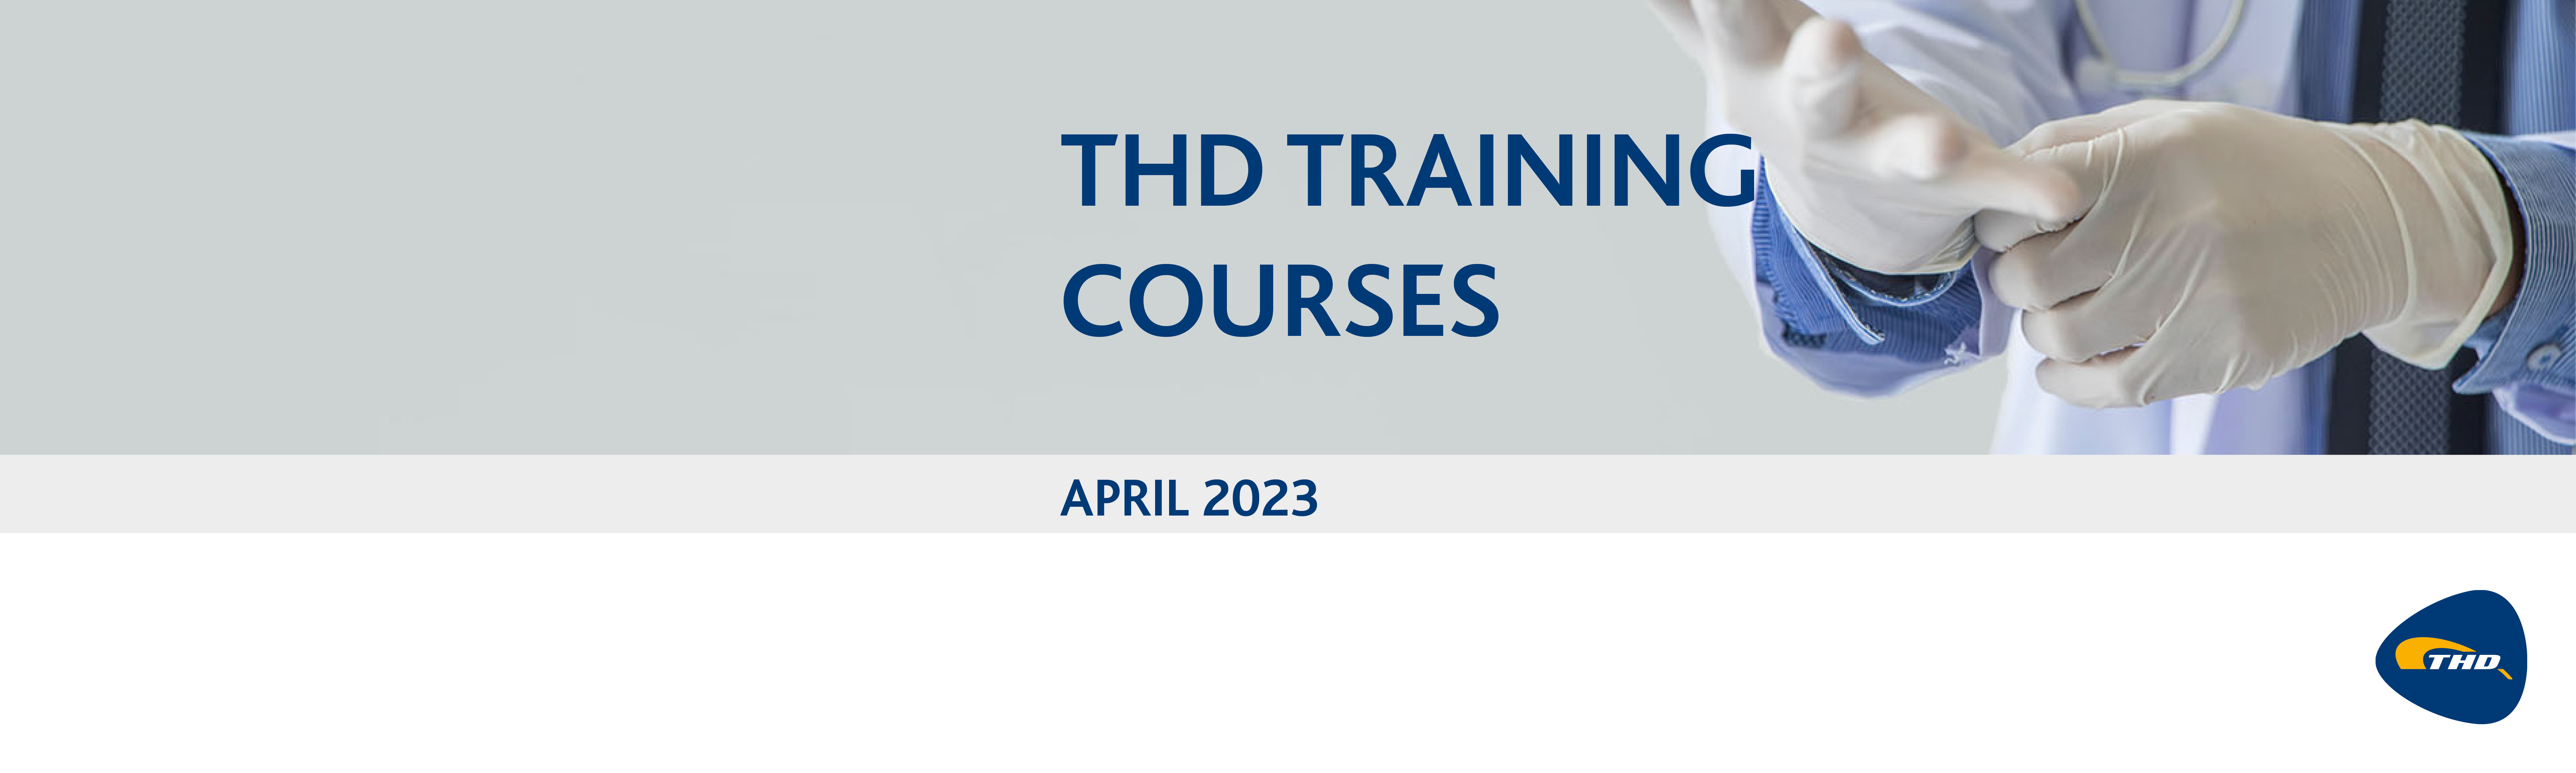 THD Webinars in April